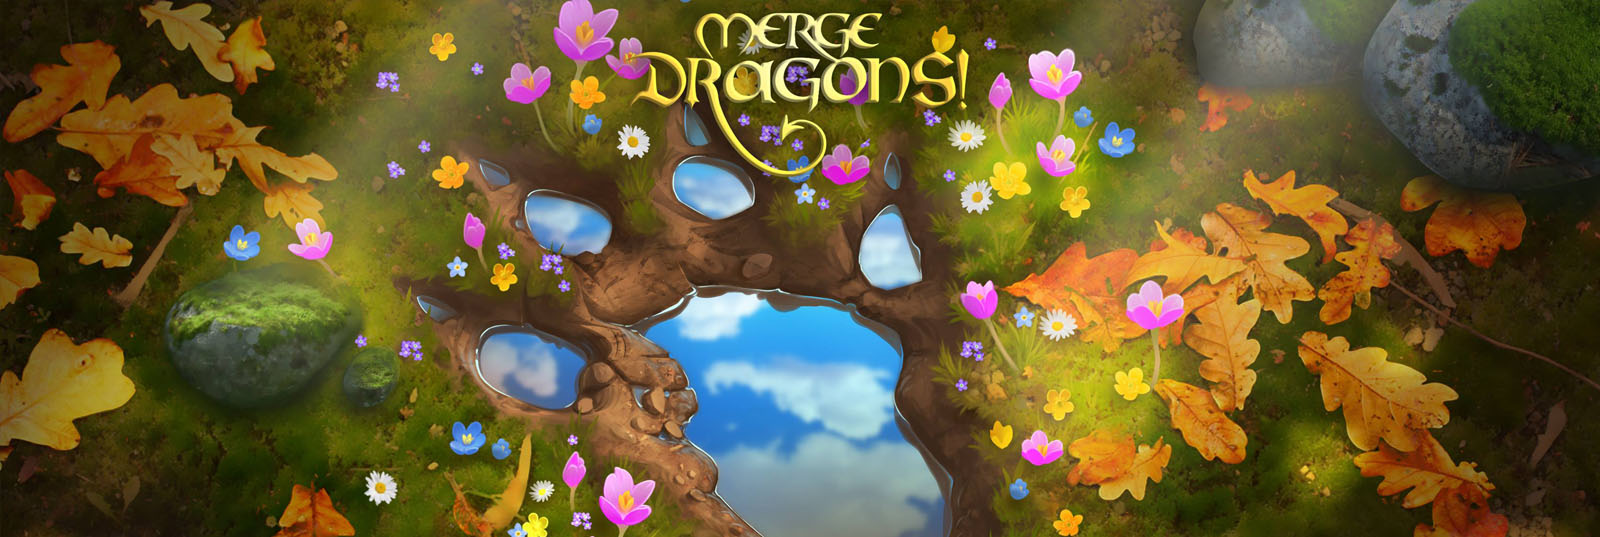 Wie spielt man Merge Dragons auf PC oder Mac? banner